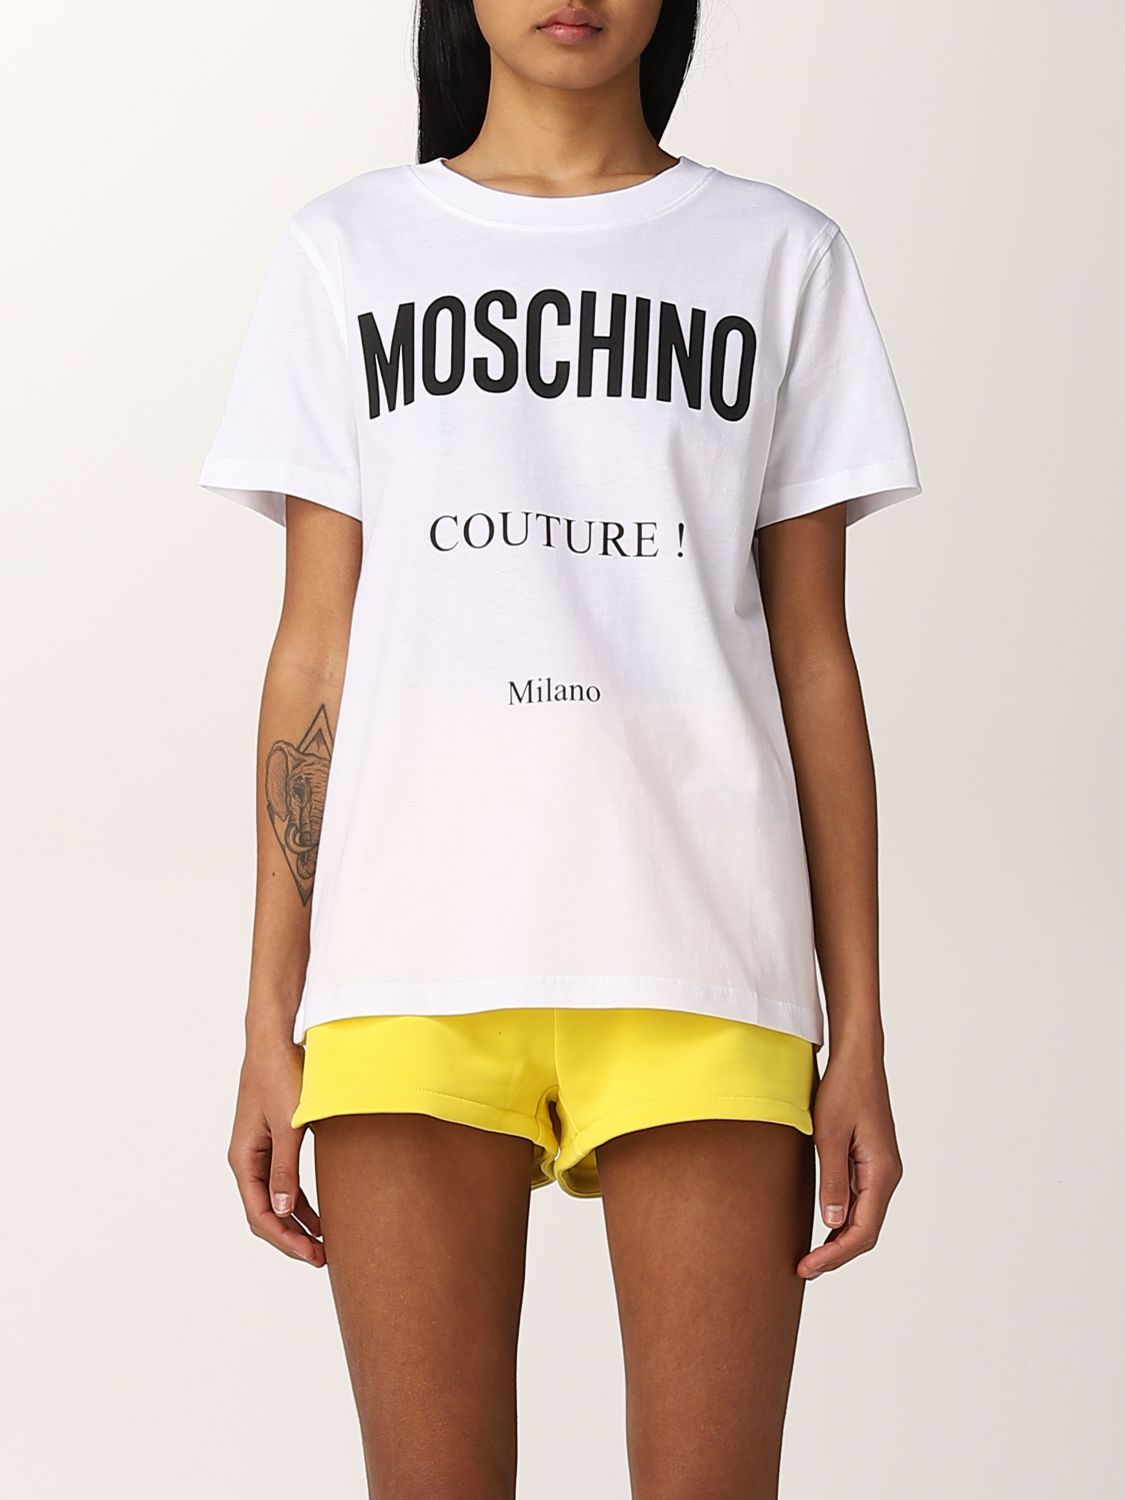 シーンに】 MOSCHINO モスキーノ Couture! Tシャツ xtDTB-m35912004731 